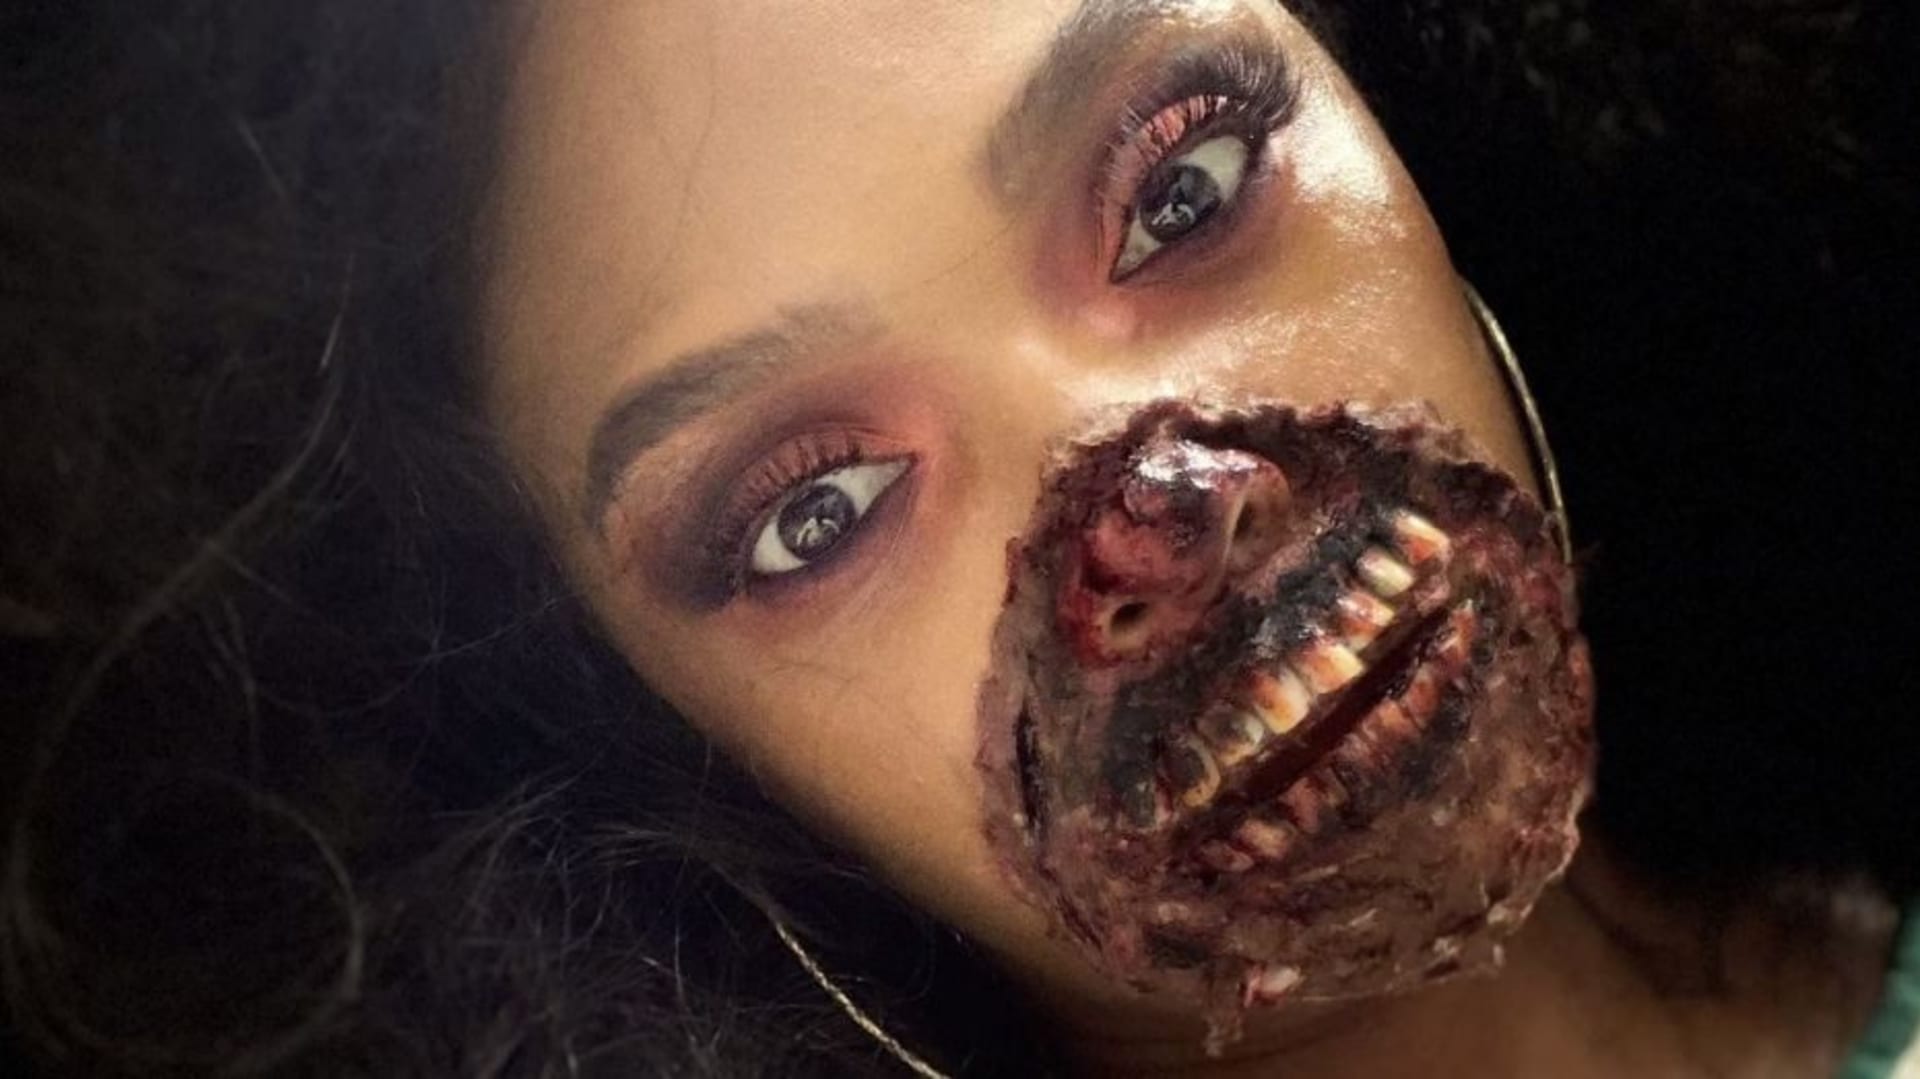 Žena se zombie make-upem děsila lékaře v nemocnici 2